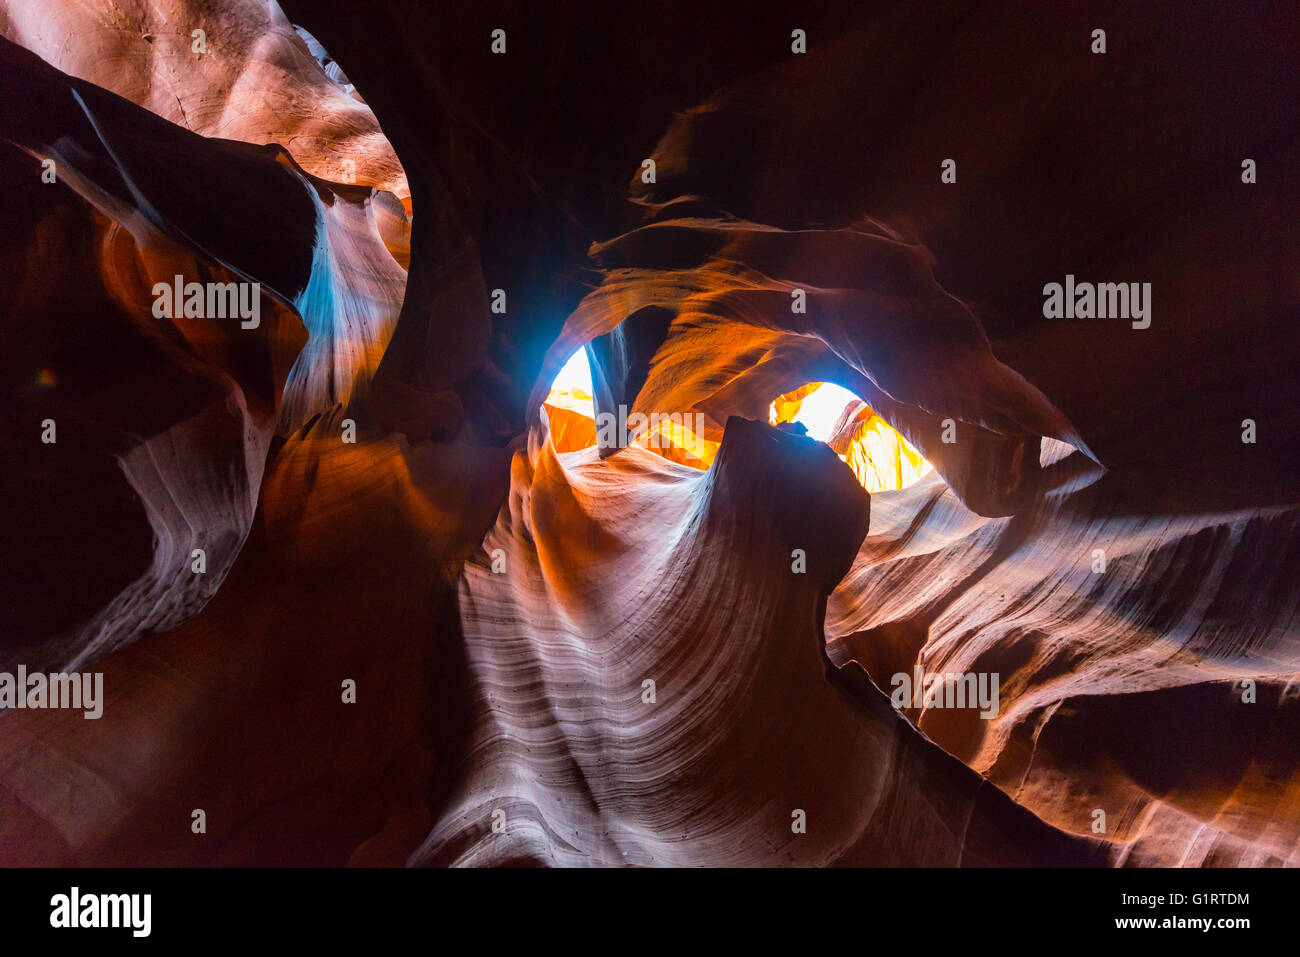 La incidencia de la luz en el cañón de piedra arenisca, slot canyon, de roca arenisca, Upper Antelope Canyon, página, la Nación Navajo, Arizona, EE.UU. Foto de stock